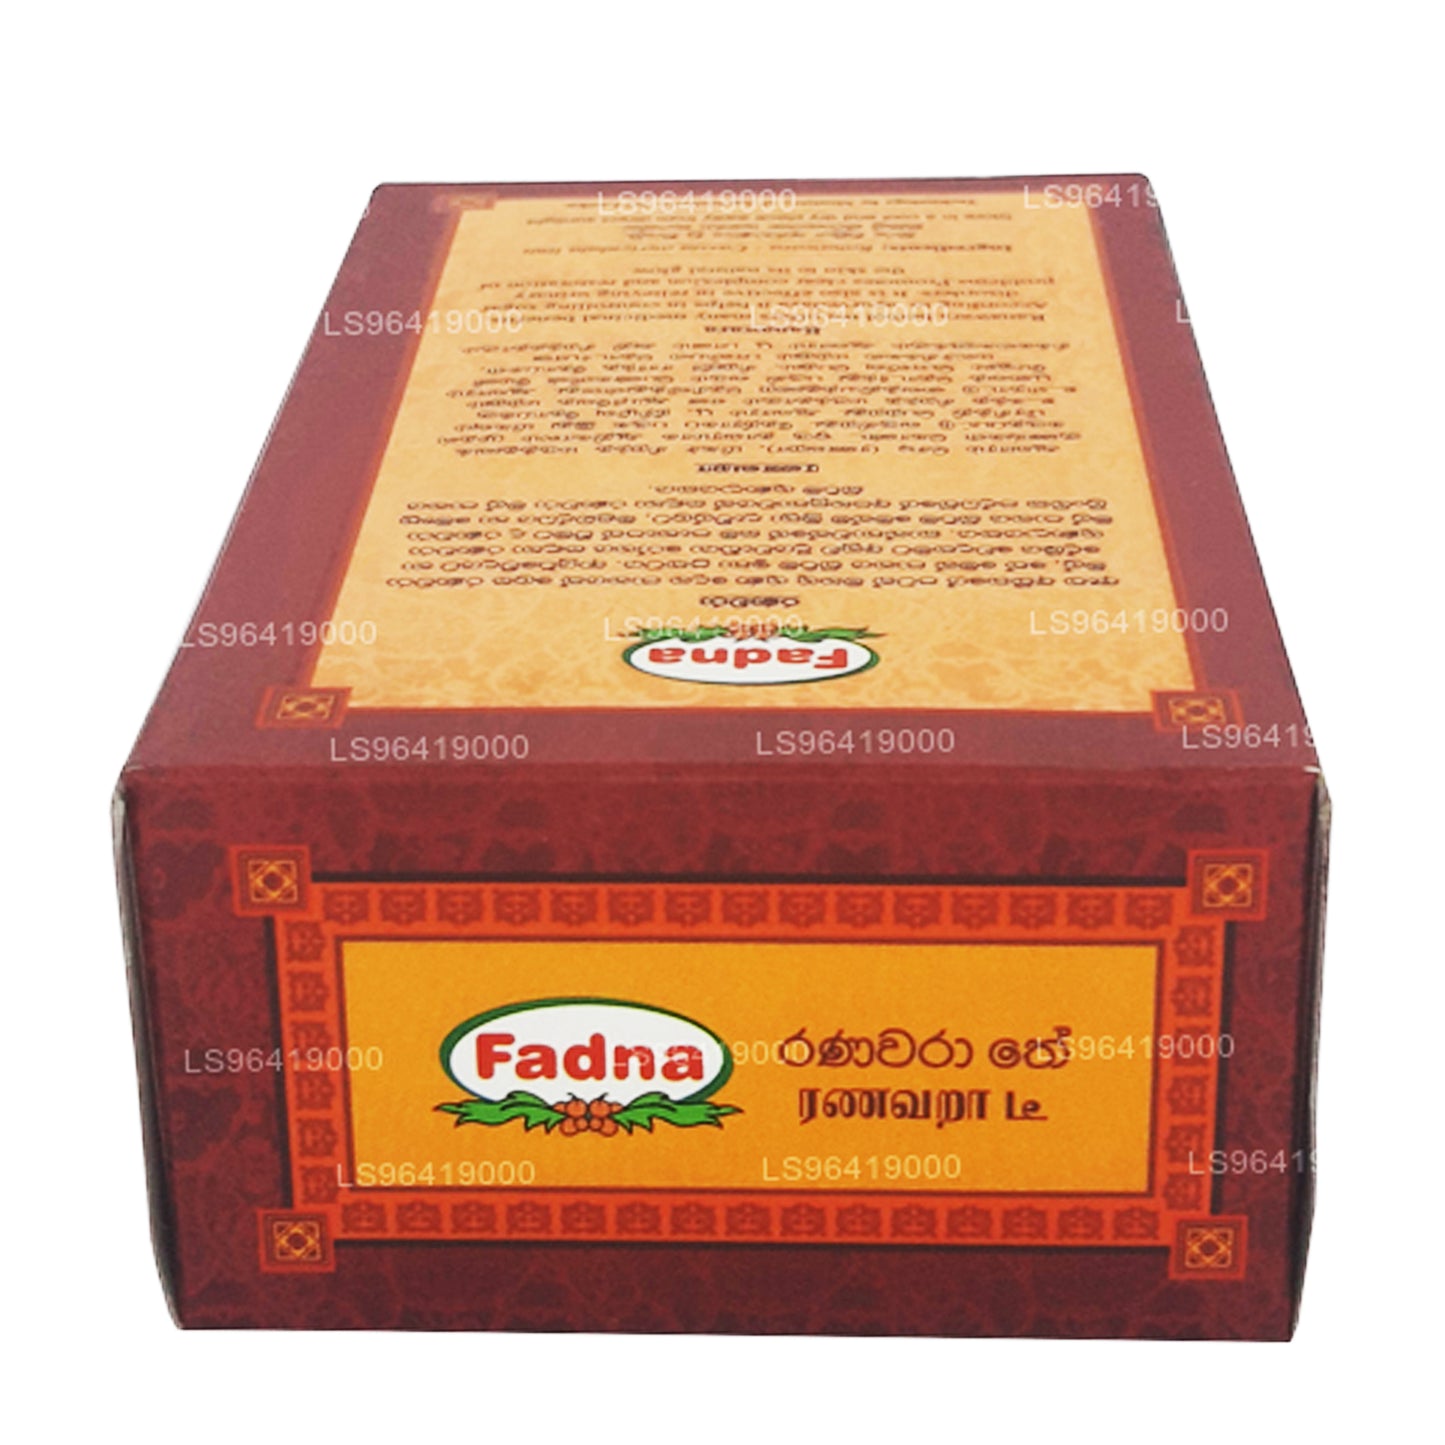 Fadna Ranawara Kräutertee (20 g) 10 Teebeutel